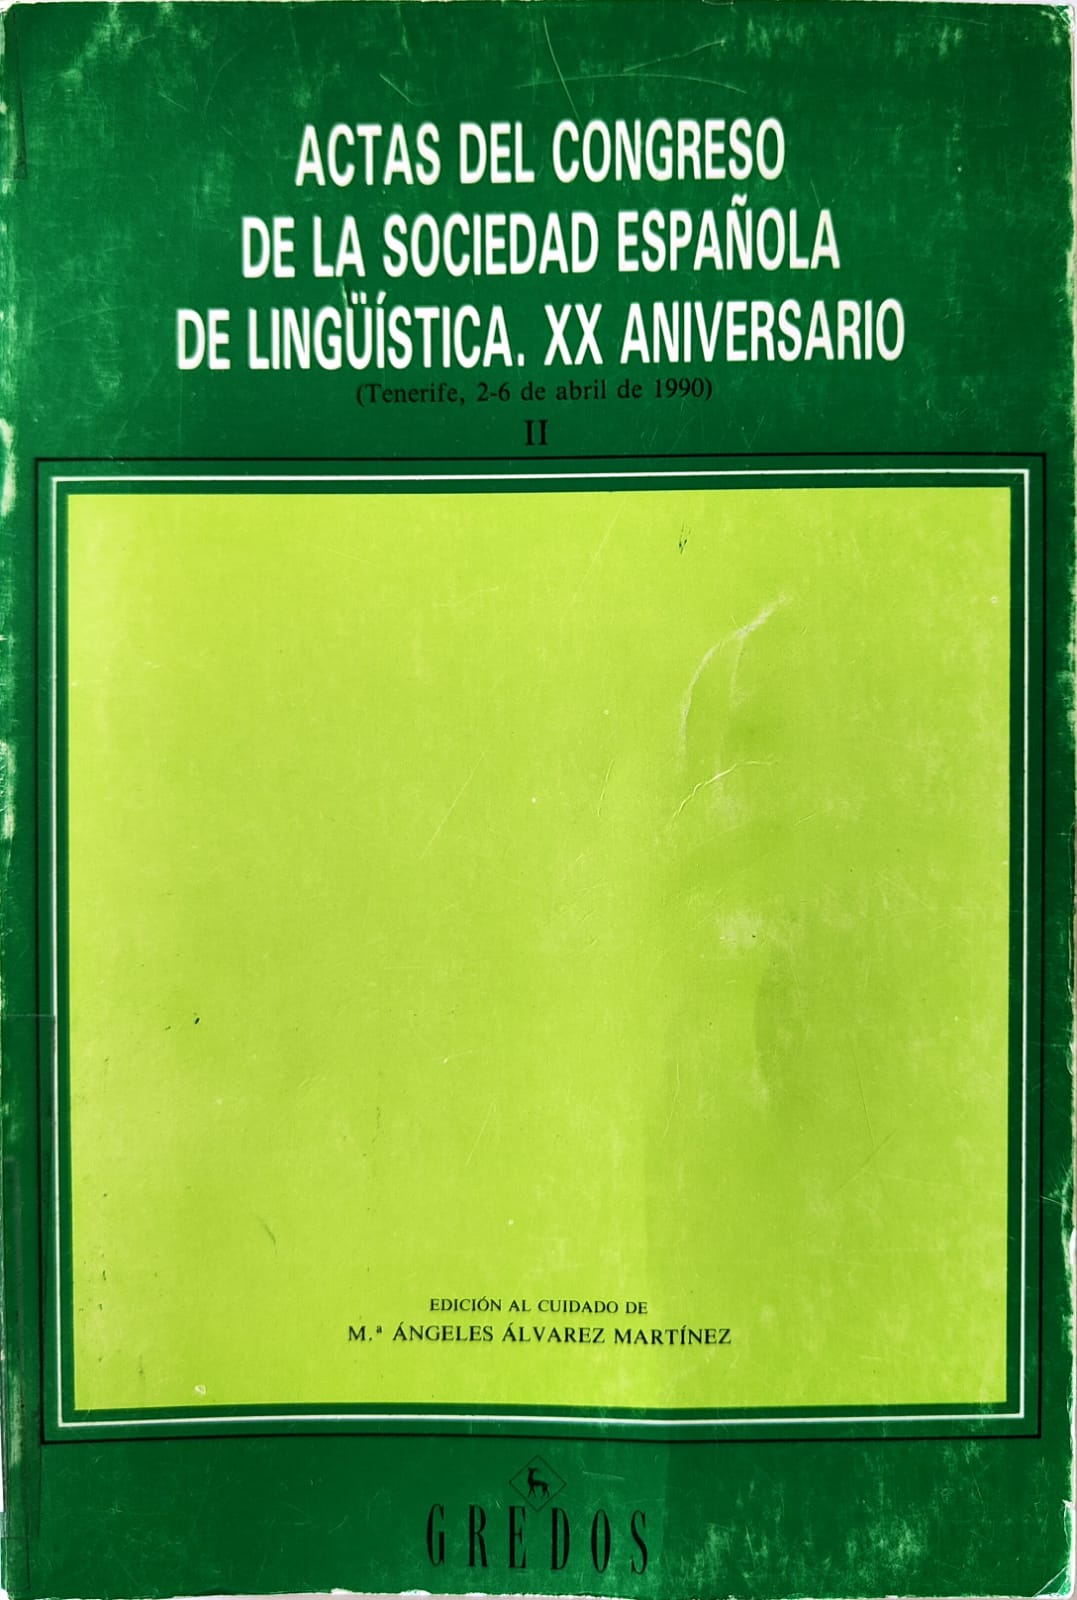 Imagen de portada del libro Actas del Congreso de la Sociedad Española de Lingüística, XX Aniversario